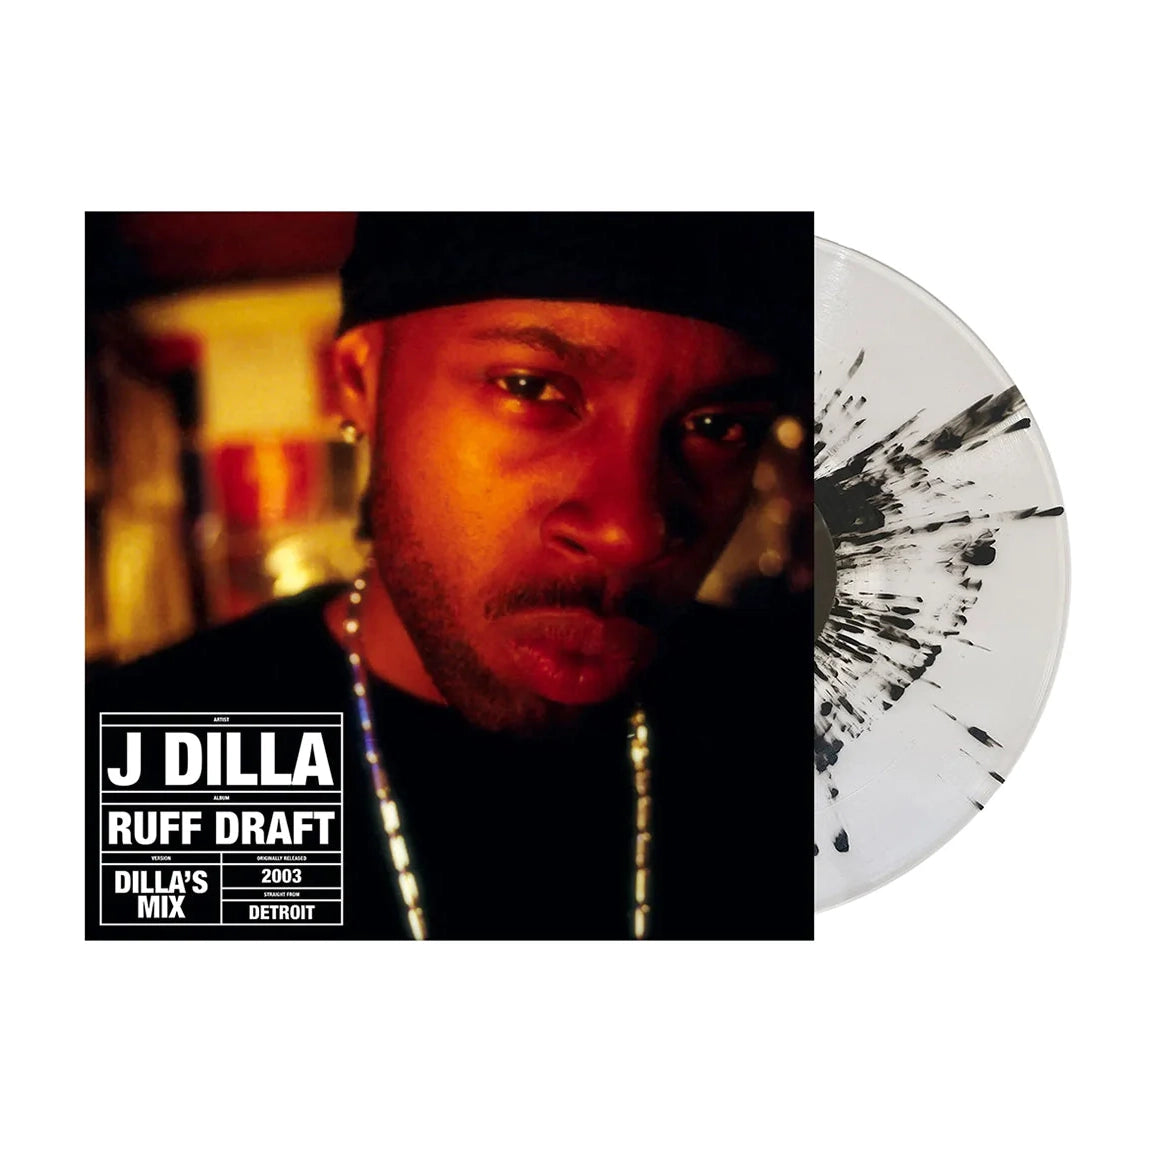 J Dilla - Ruff Draft - Dilla’s Mix: Clear/Black Splatter Vinyl LP